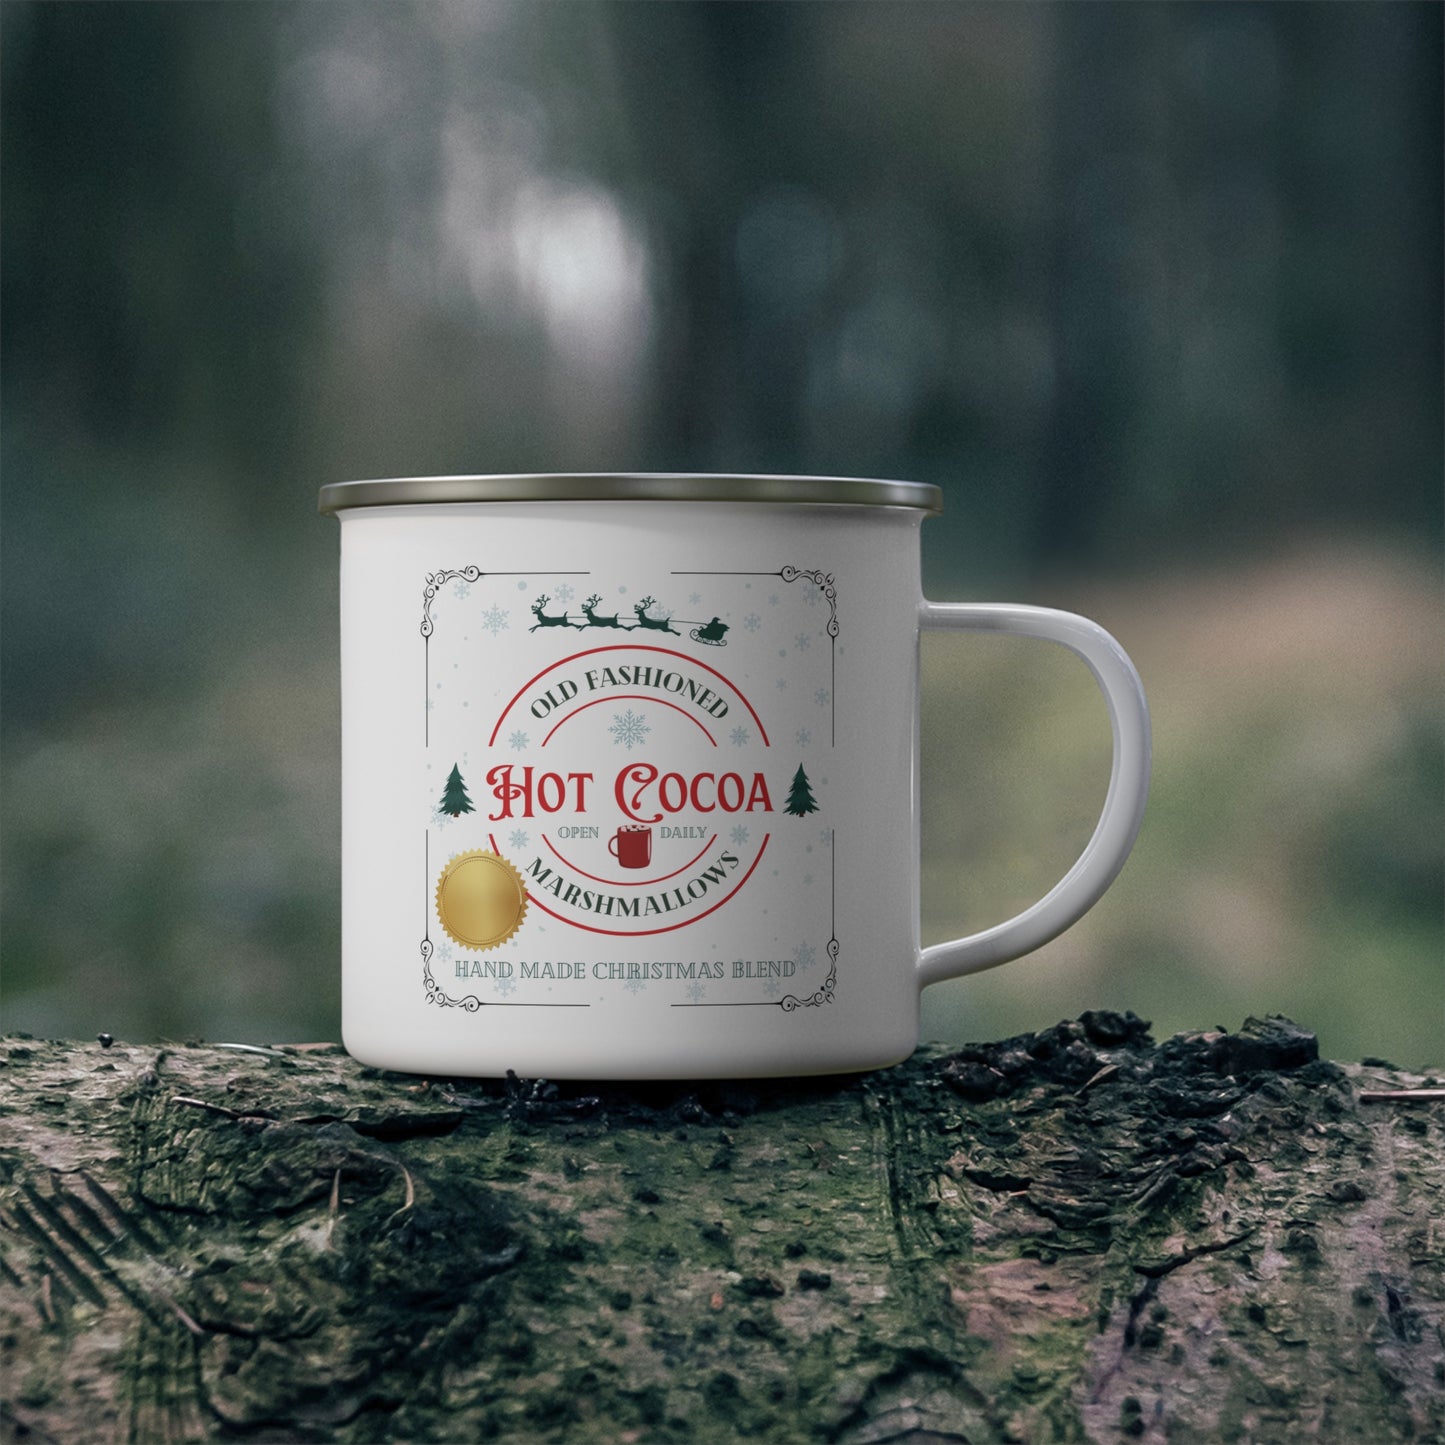 Old Fashioned Hot Cocoa Customized Enamel Mug